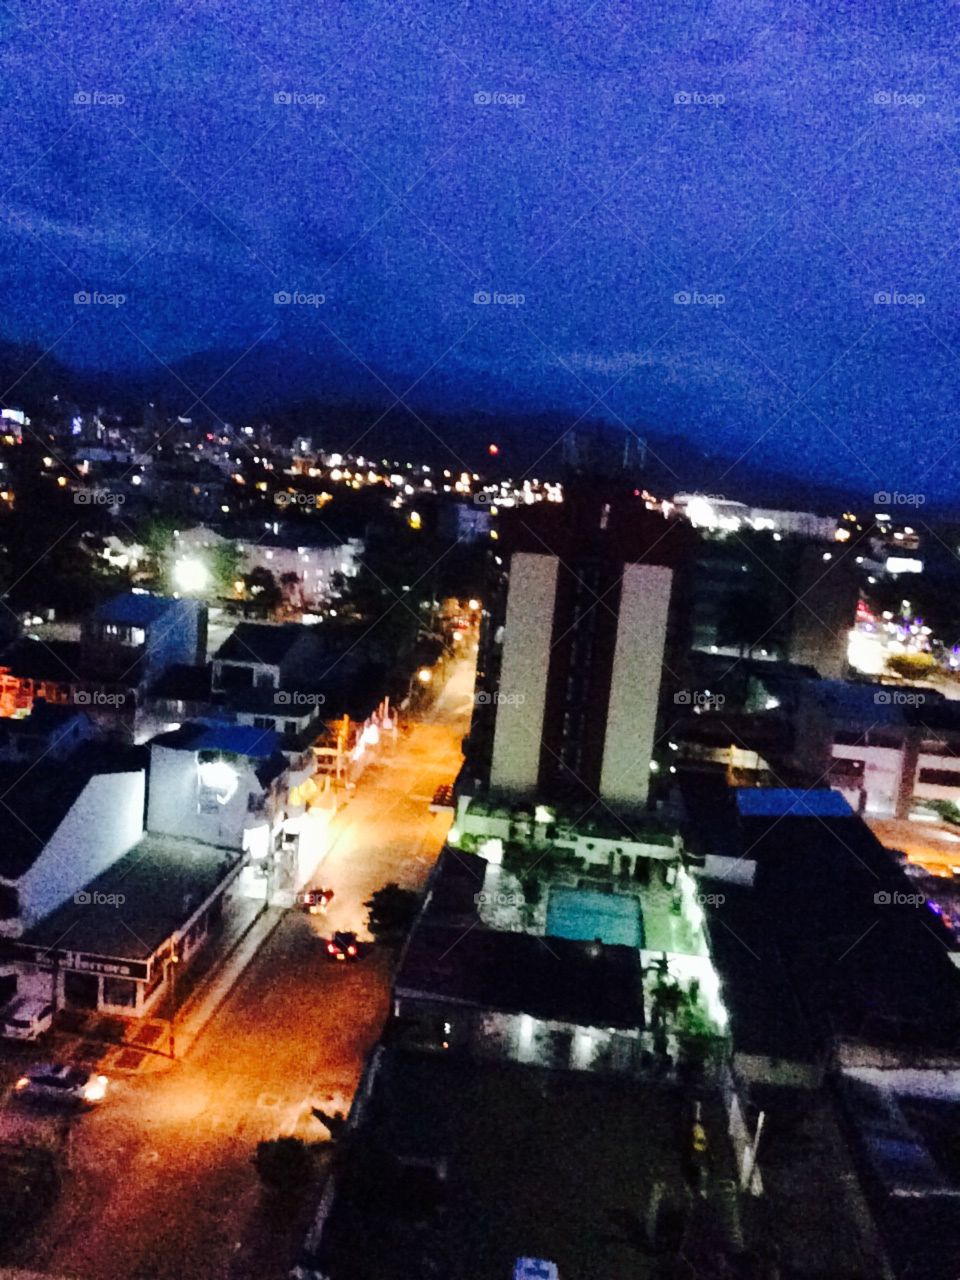 Villavicencio city